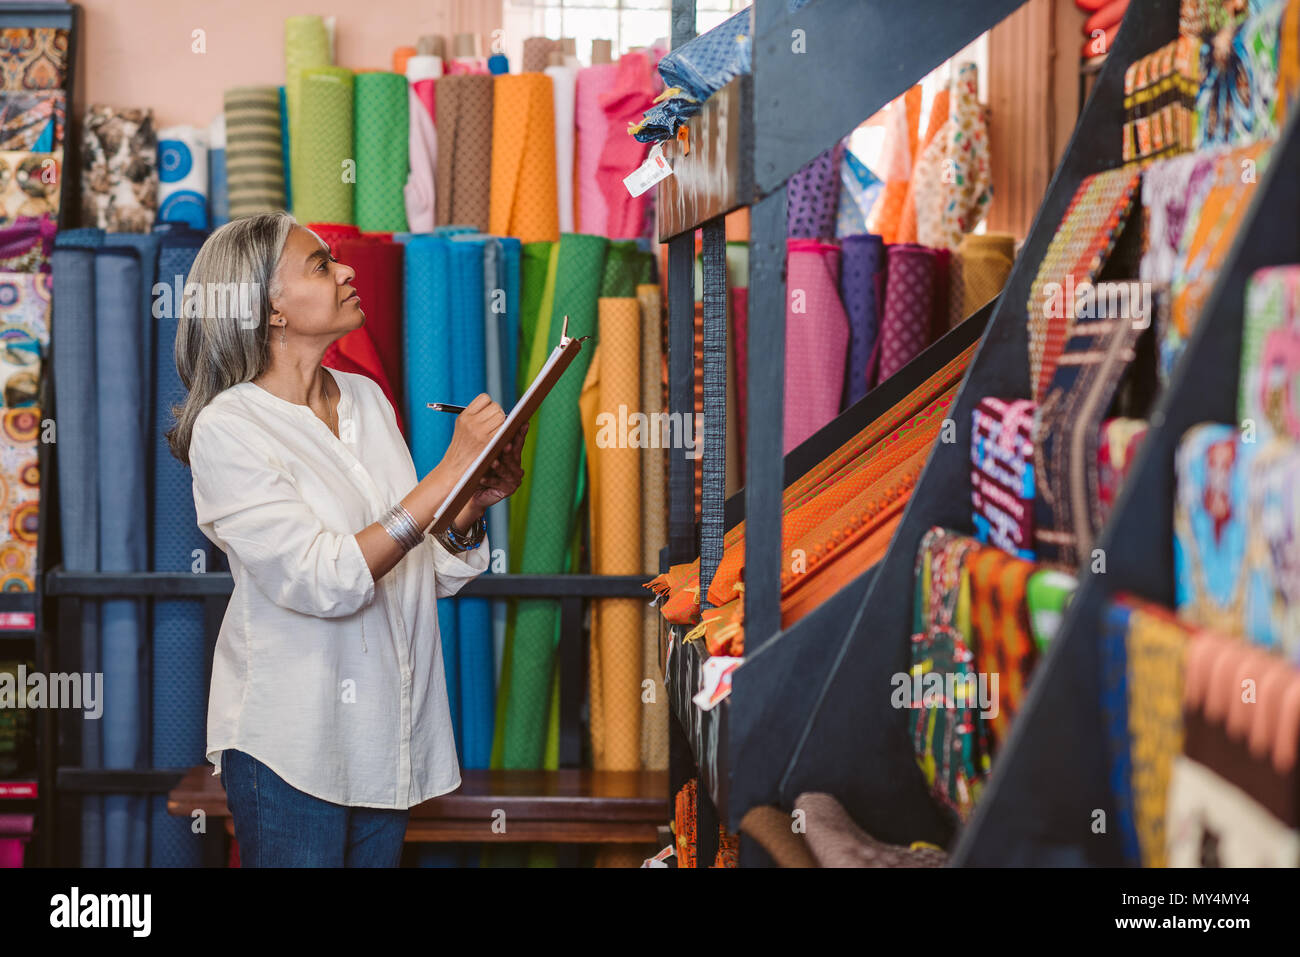 Reifen fabric store Inhaber stehen in Ihrem Shop von bunten Tüchern und Textilien Bestandsaufnahme mit einem Klemmbrett umgeben Stockfoto